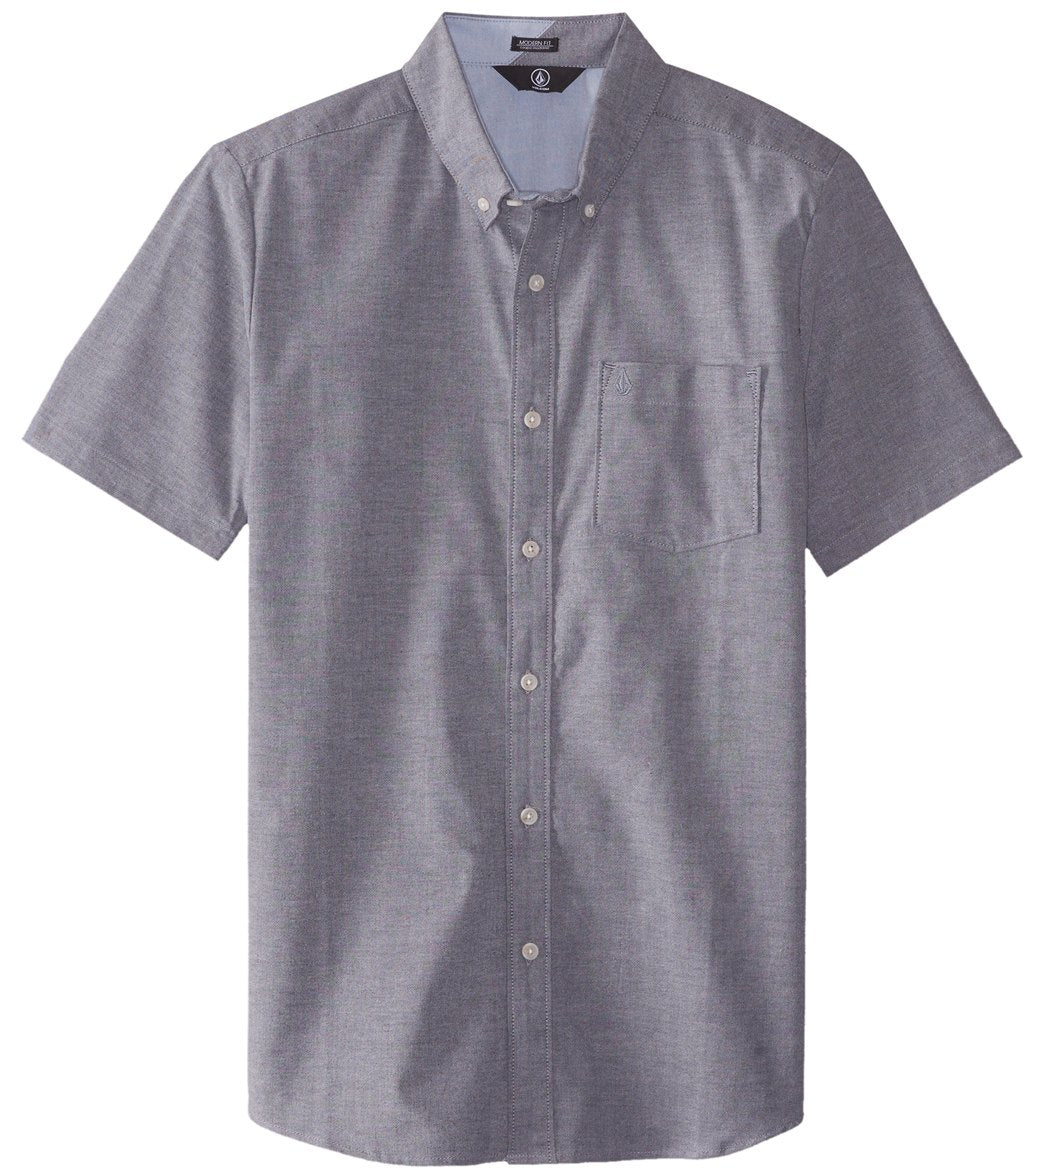 Volcom Men's Everett Oxford Short Sleeve Shirt - Black Small Cotton/Elastane/Polyester - Swimoutlet.com